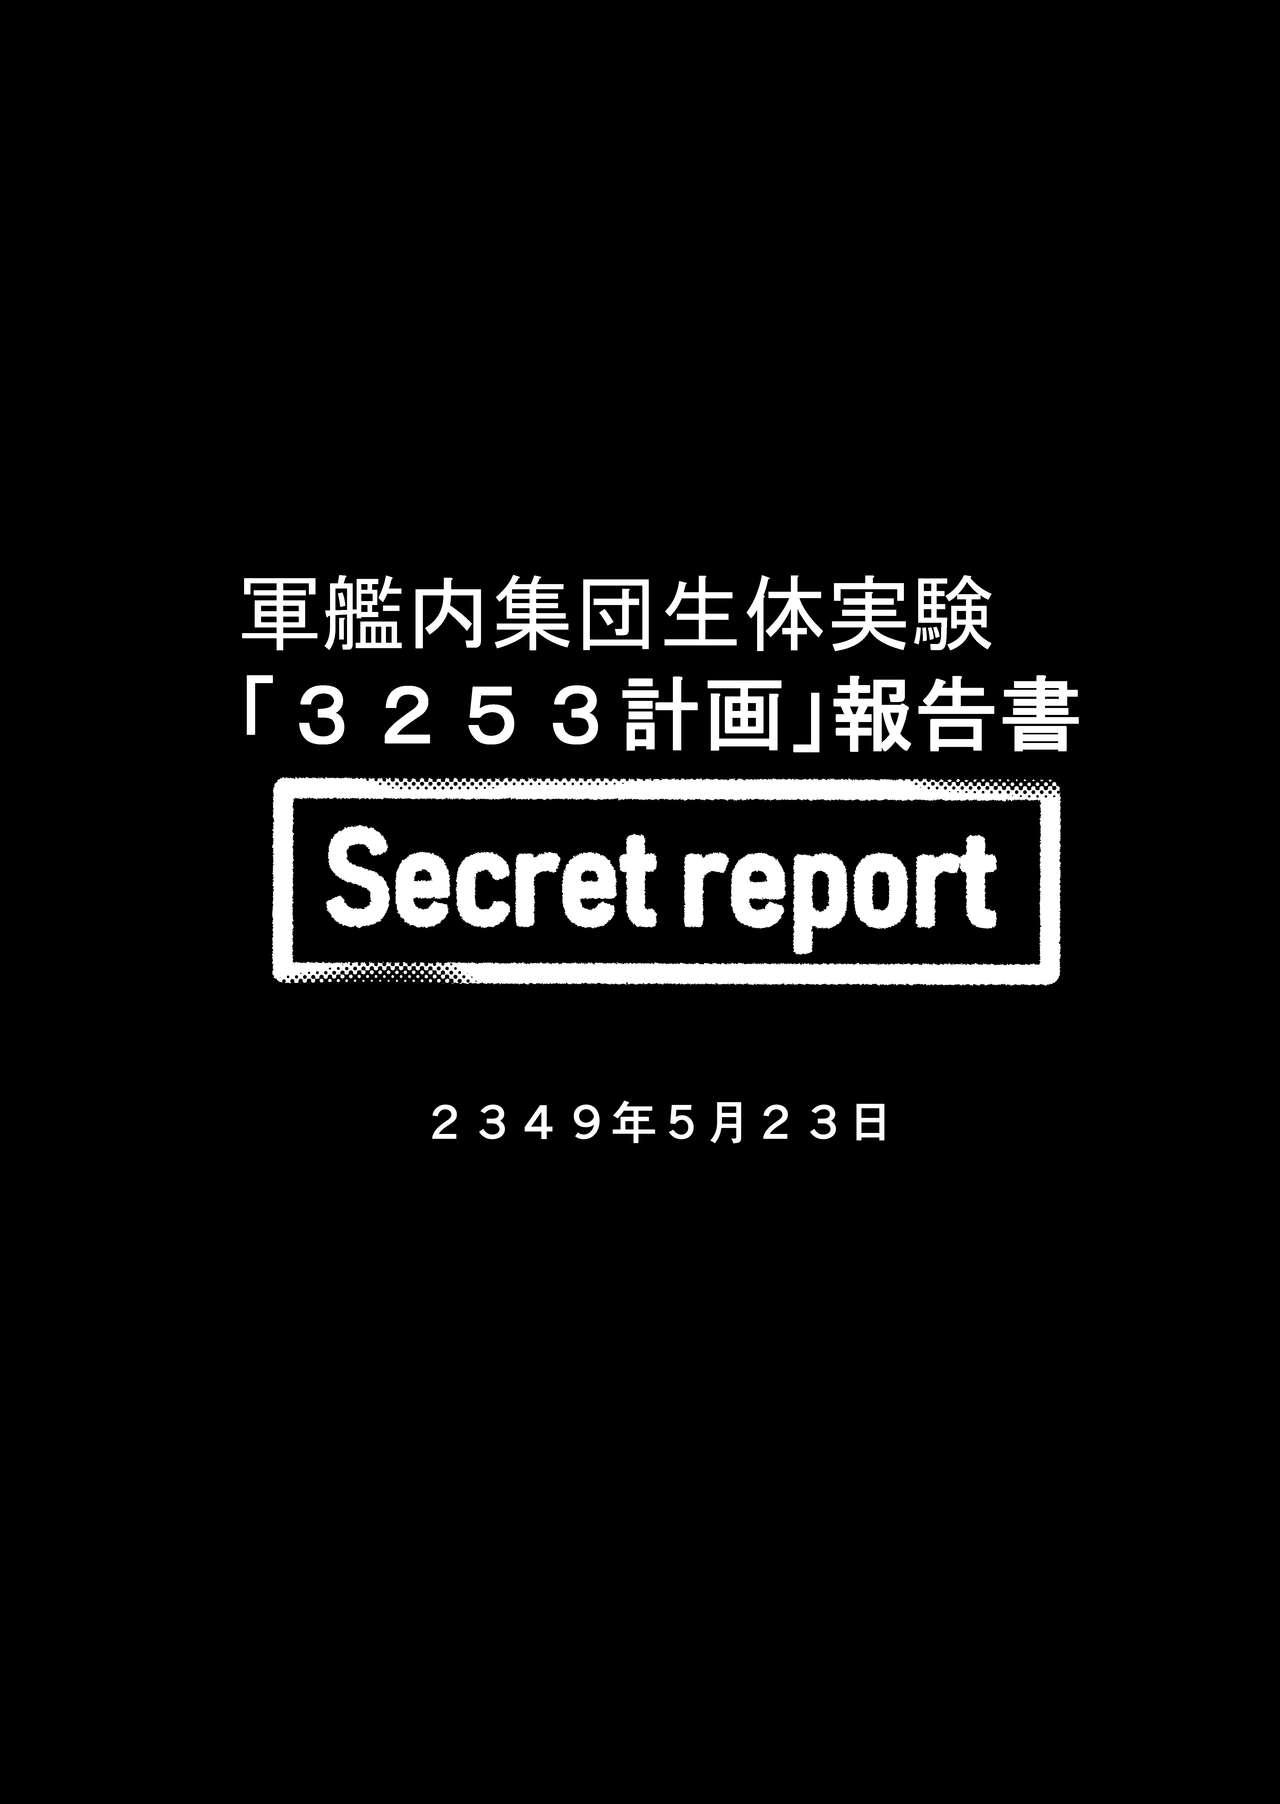 Secret report 1